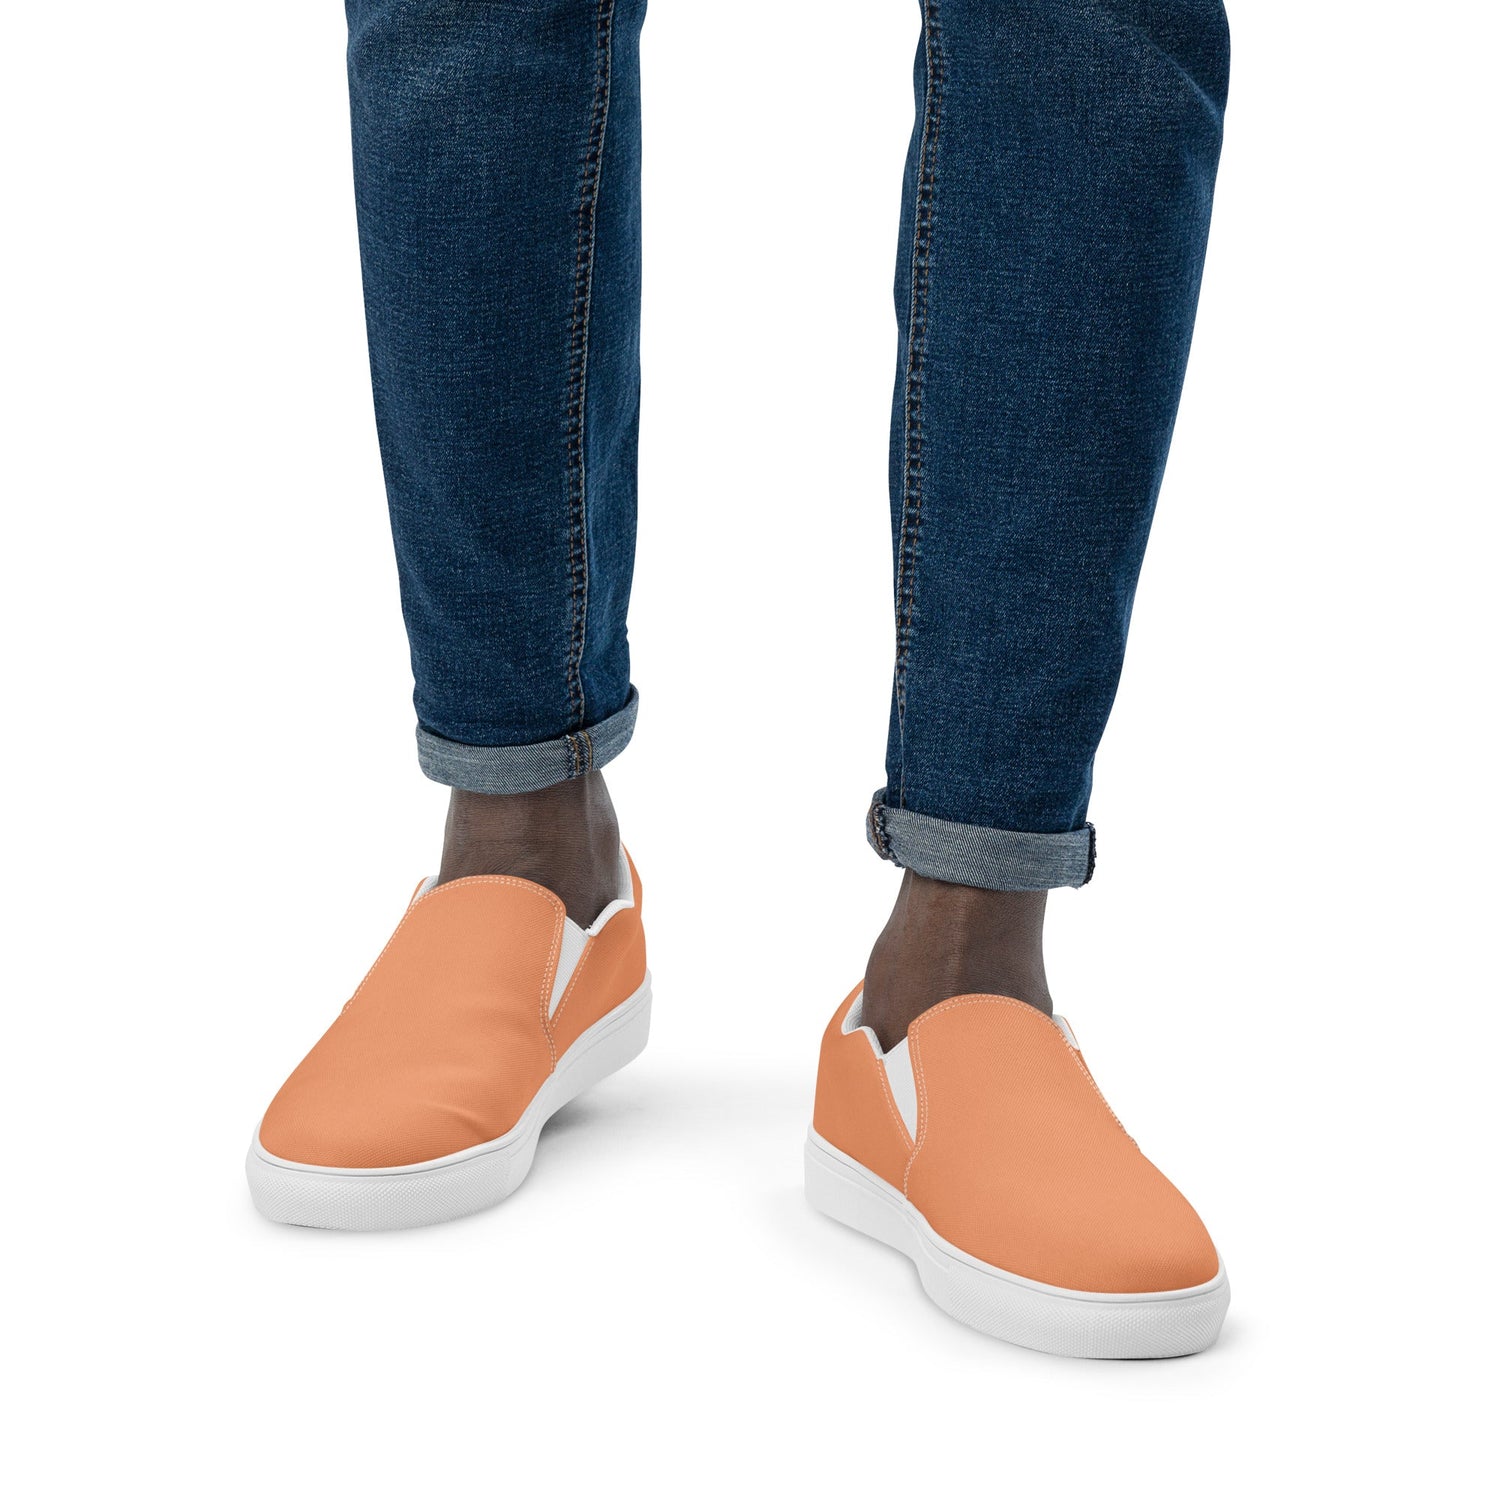 klasneakers Men’s slip-on canvas shoes - Peach